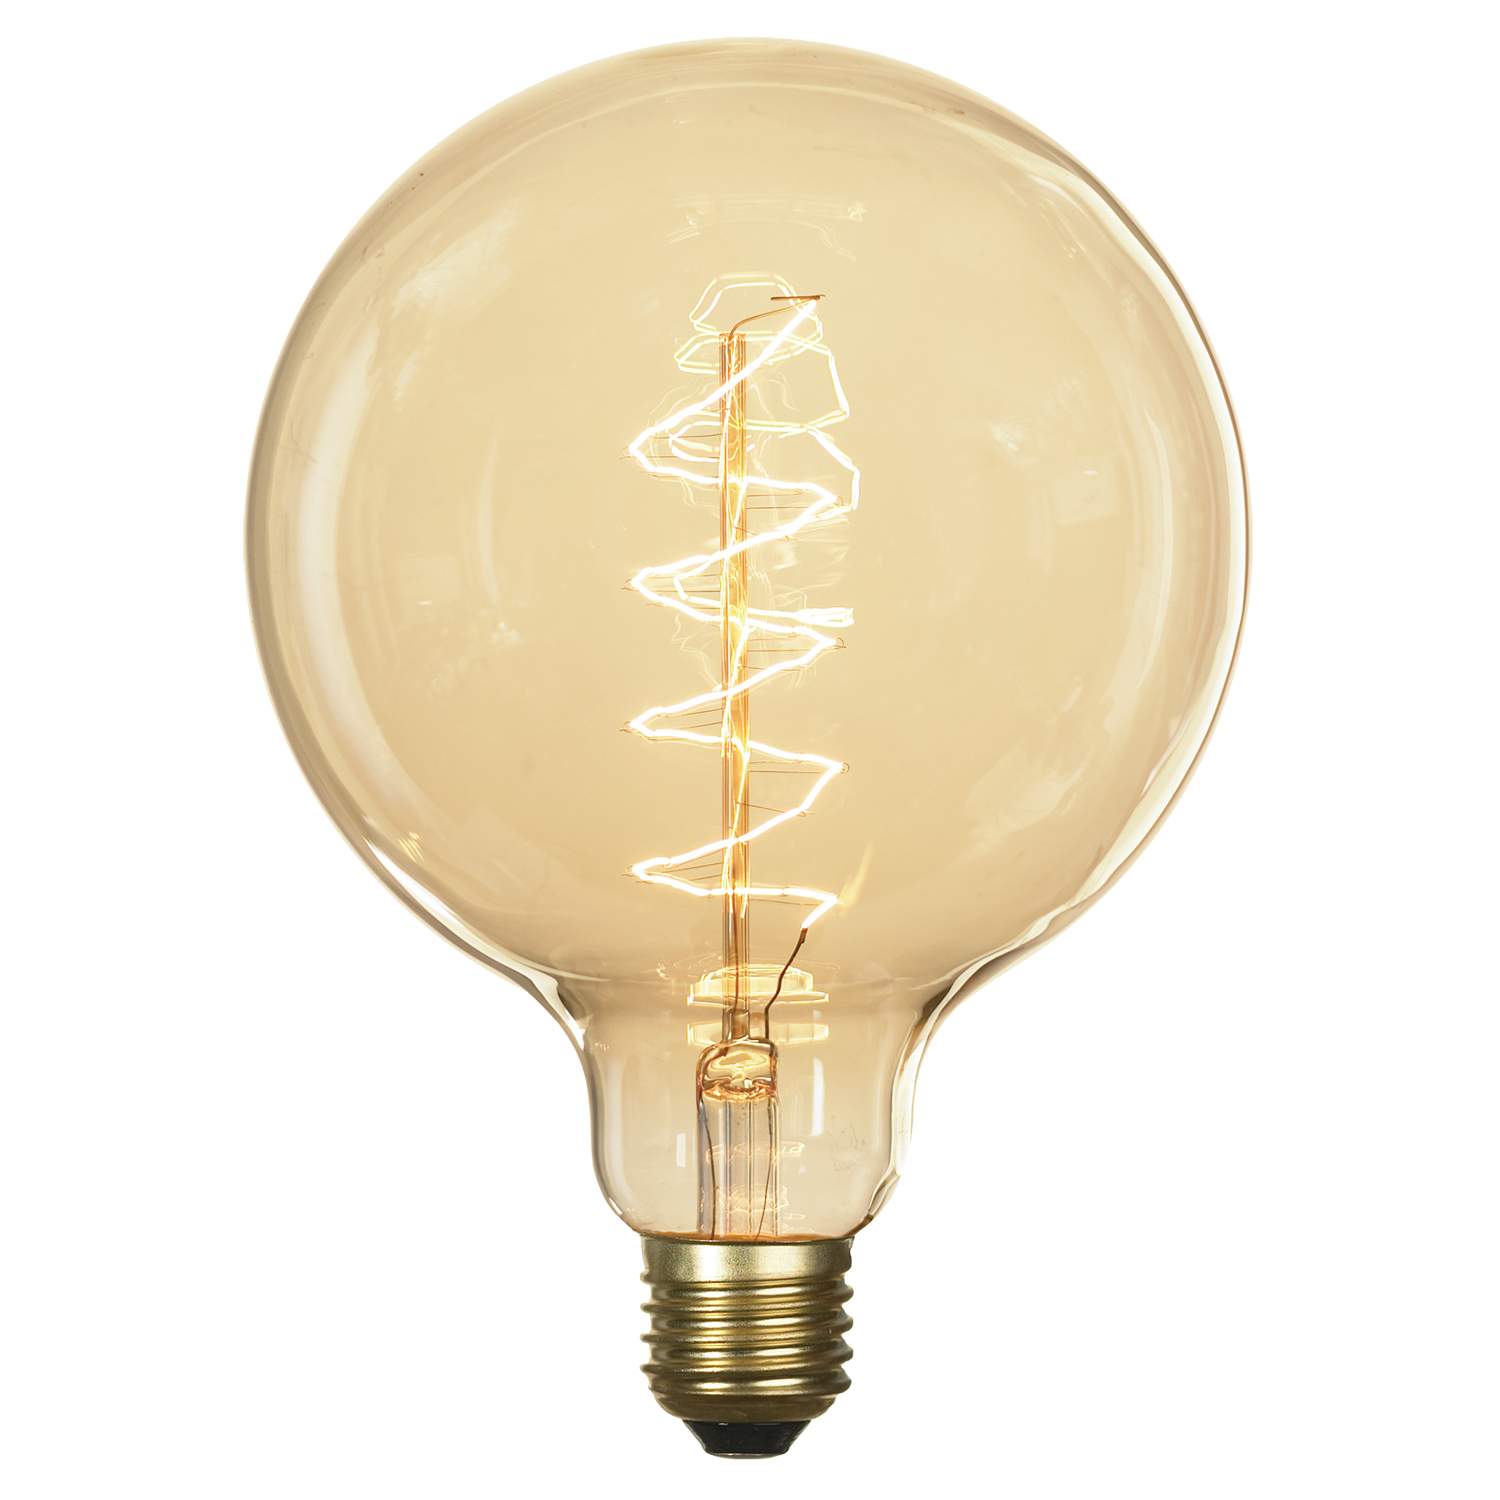 Edison lamp 60 w